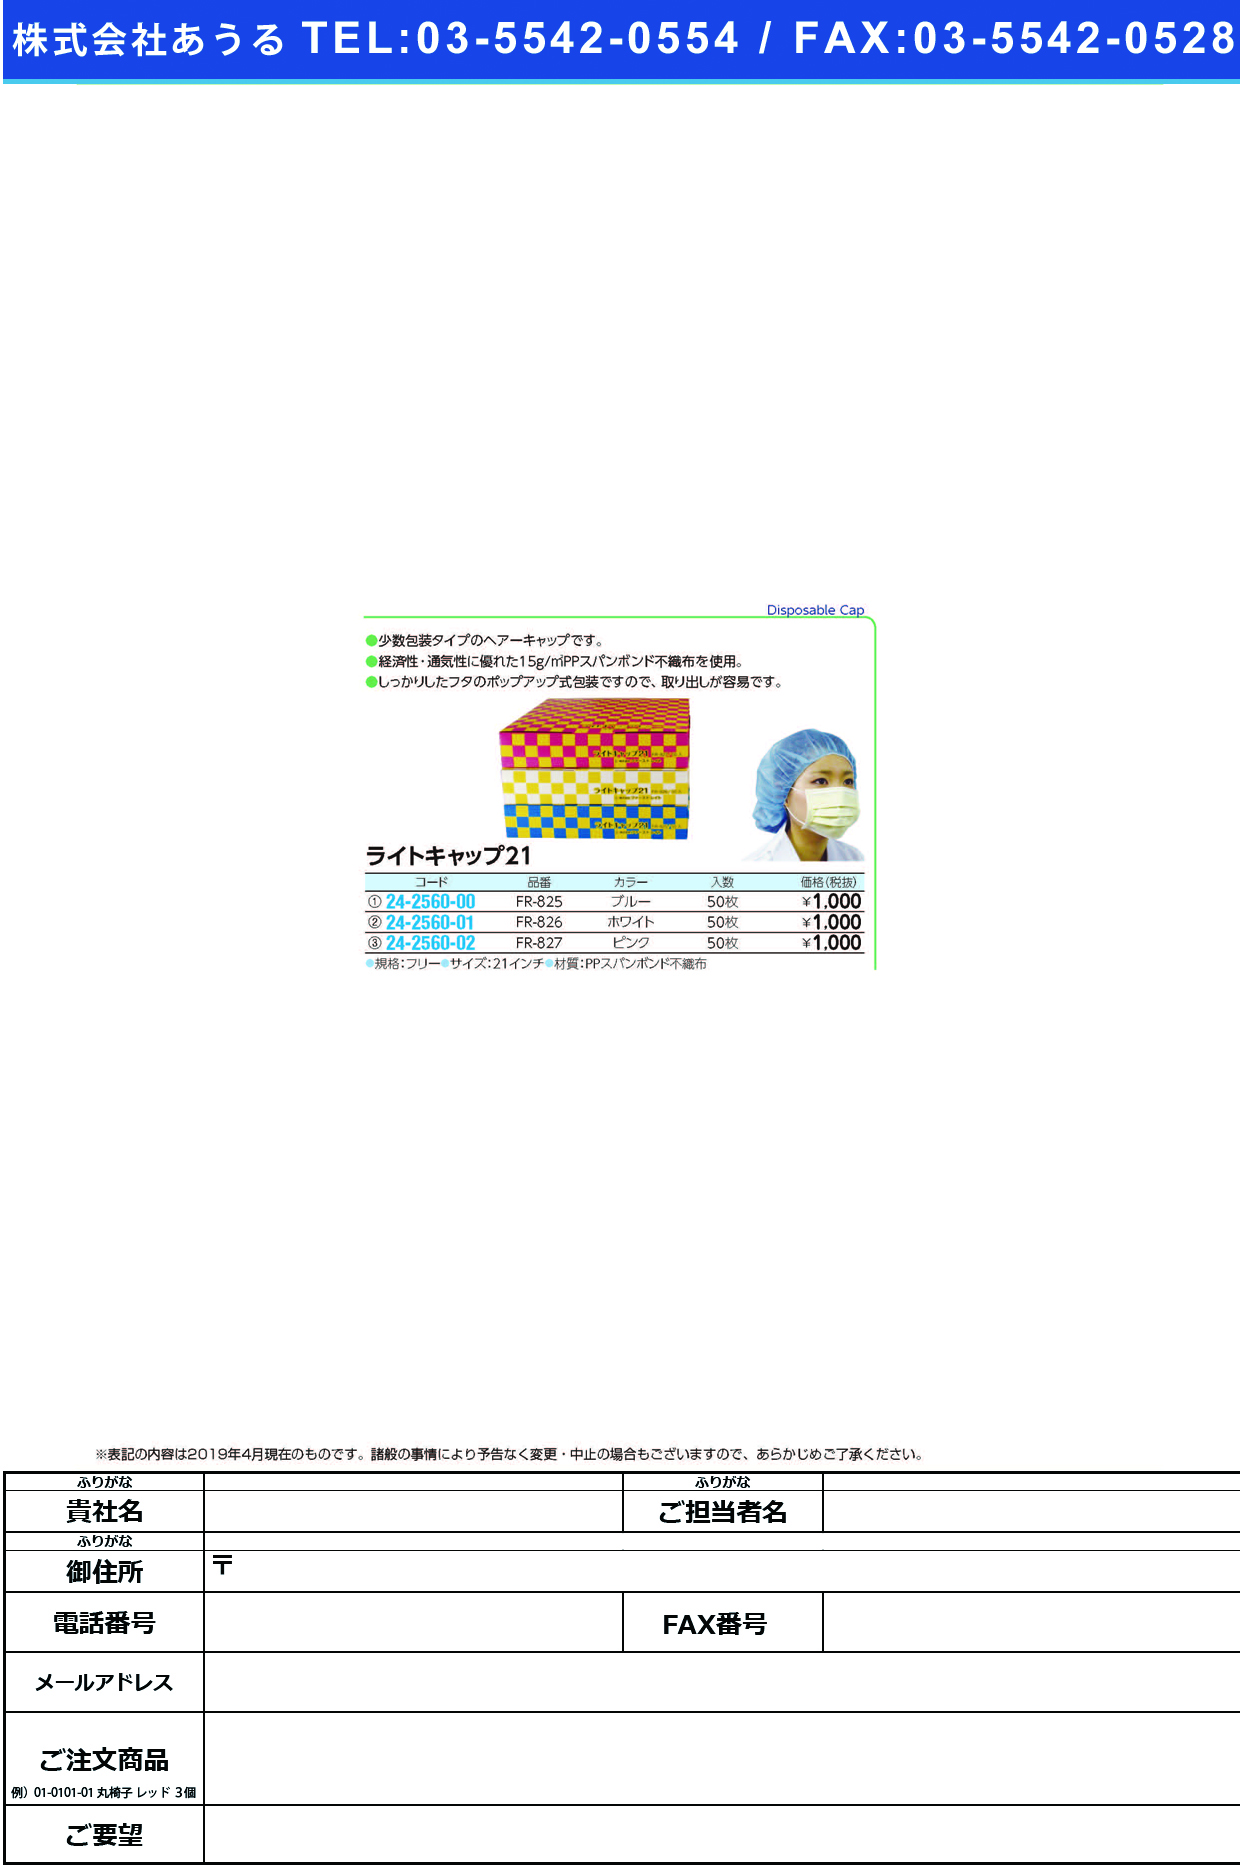 (24-2560-00)ライトキャップ２１ FR-825(ﾌﾞﾙｰ)50ﾏｲｲﾘ ﾗｲﾄｷｬｯﾌﾟ21(ファーストレイト)【1箱単位】【2019年カタログ商品】